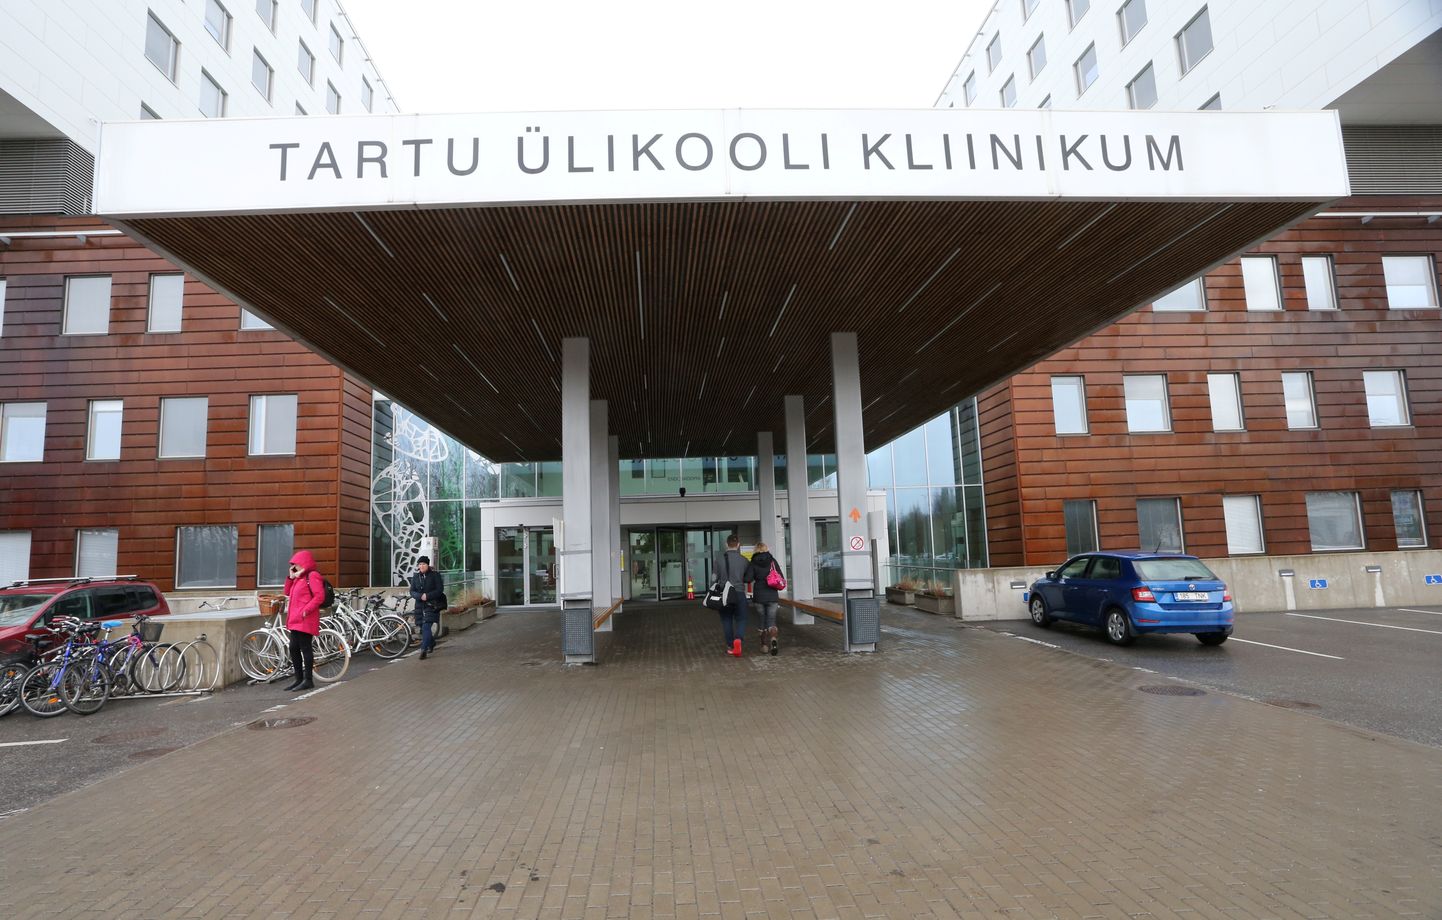 Kannatanud viidi Tartu ülikooli kliinikumi.